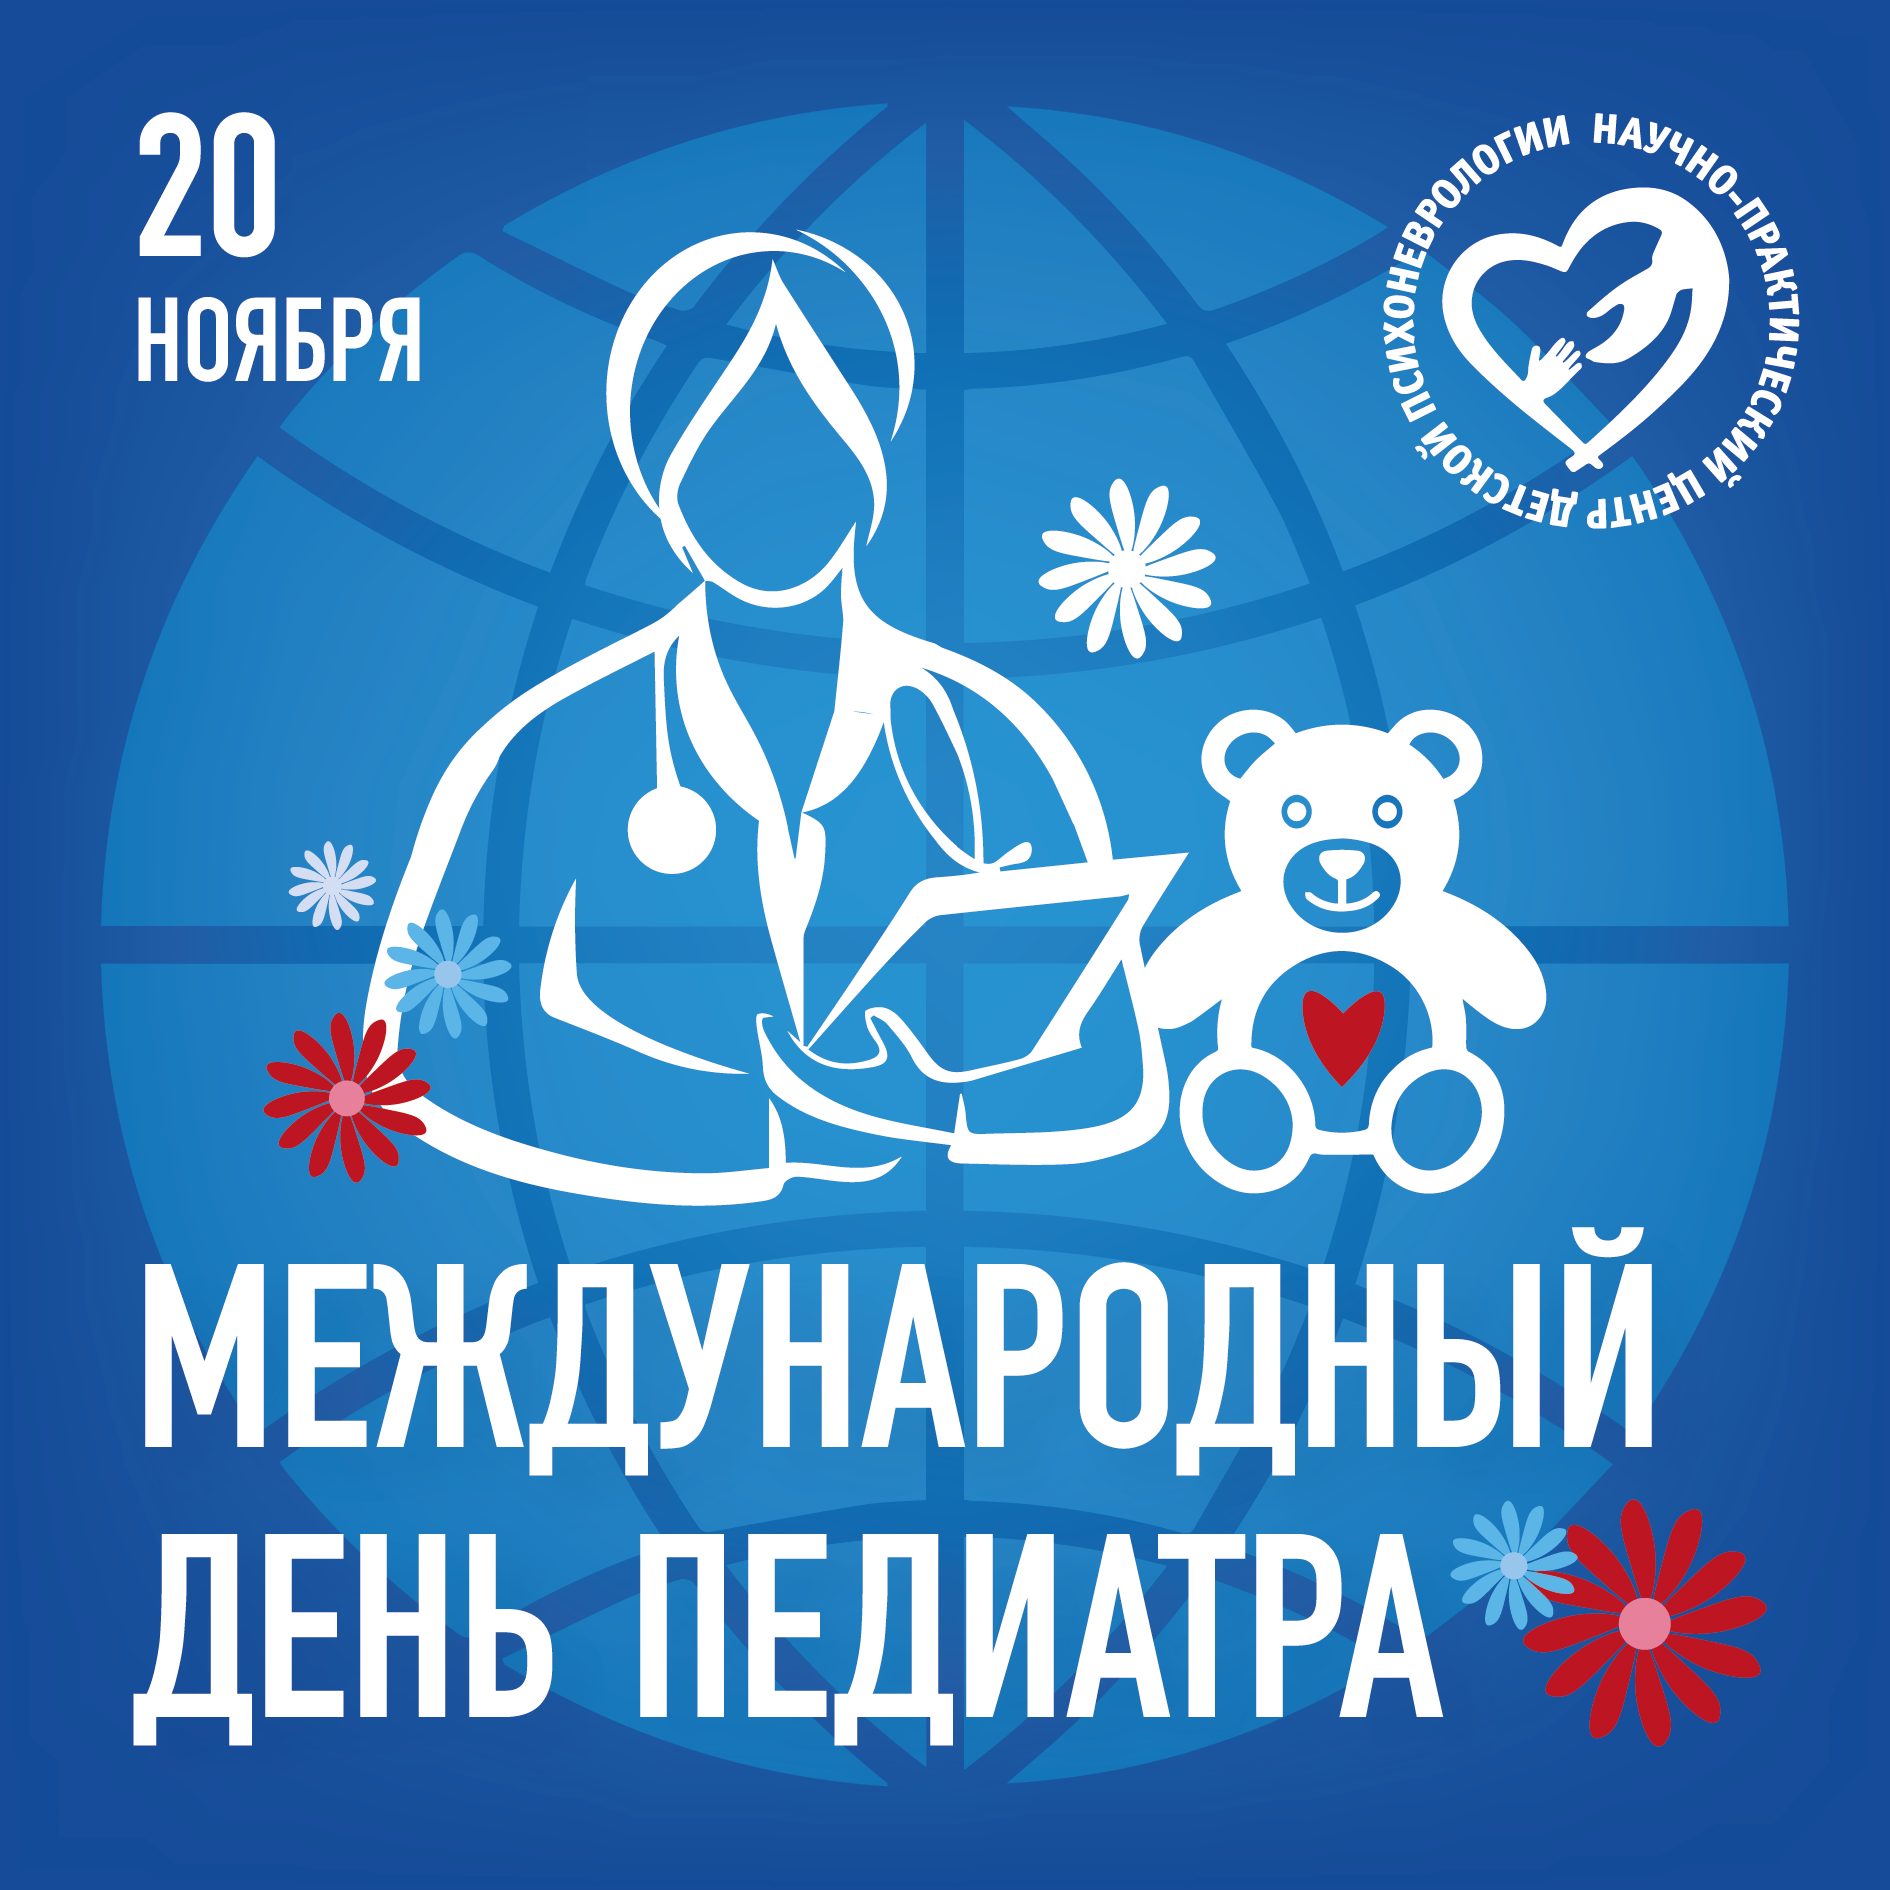 Международный день педиатра!